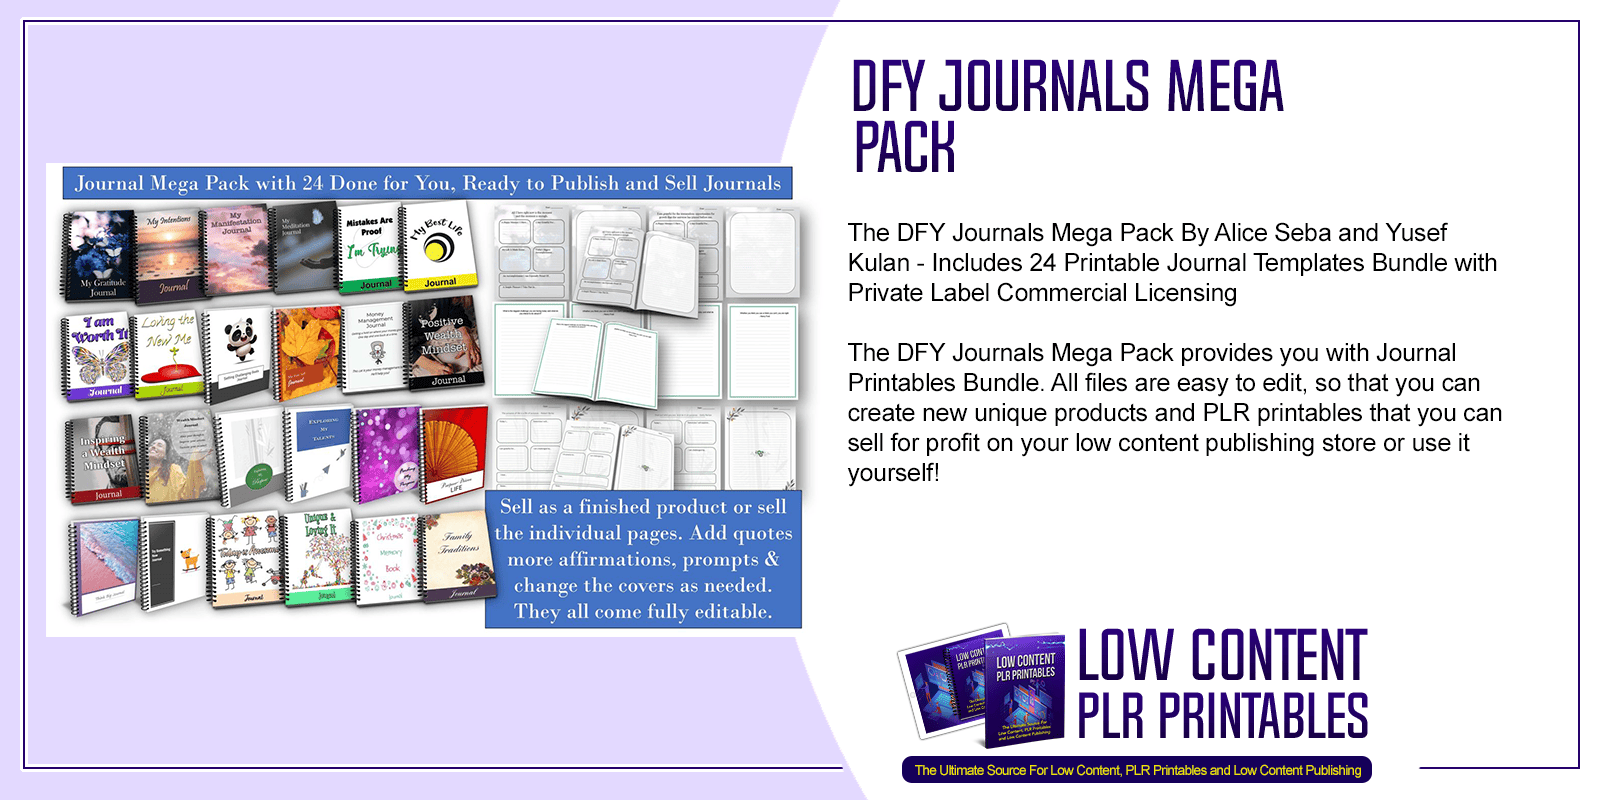 DFY Journals Mega Pack